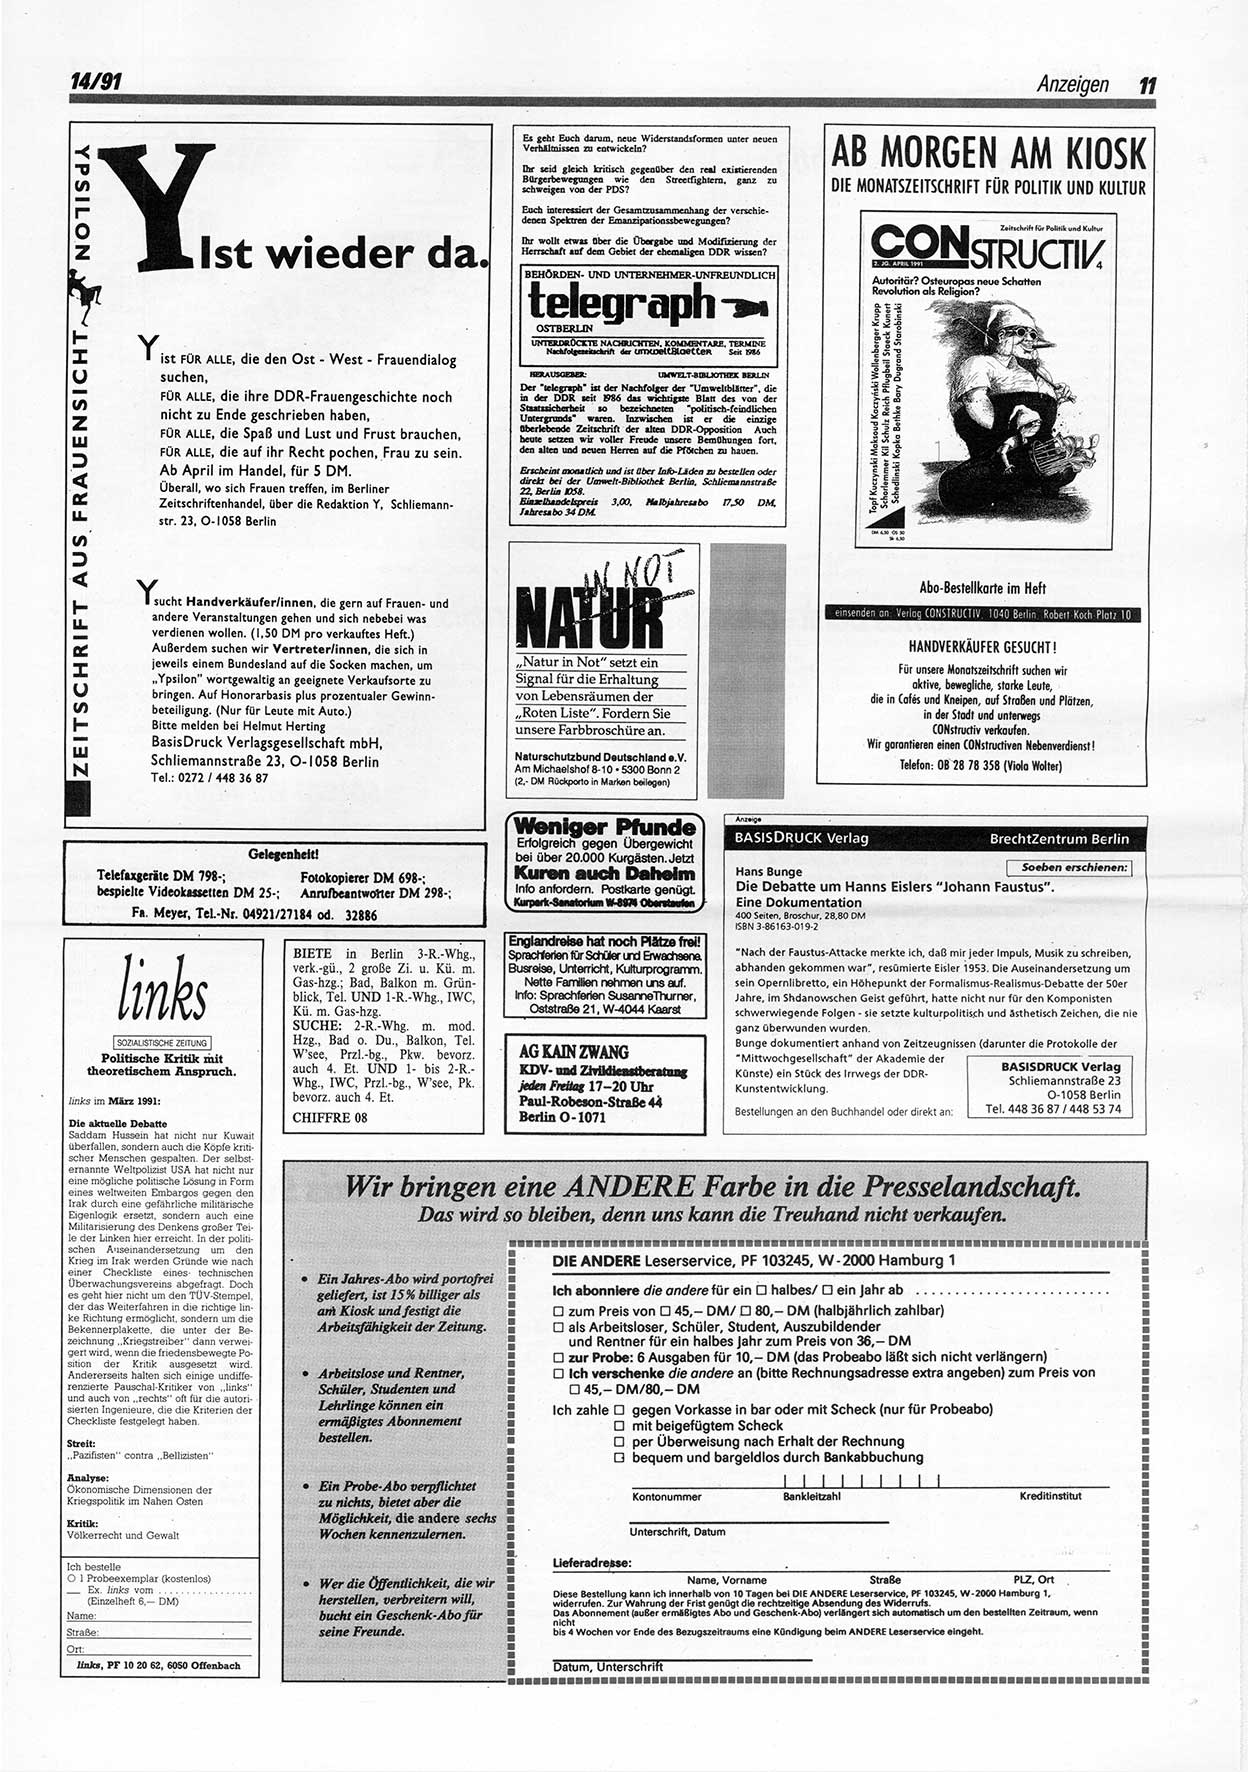 Die Andere, Unabhängige Wochenzeitung für Politik, Kultur und Kunst, Ausgabe 14 vom 3.4.1991, Seite 11 (And. W.-Zg. Ausg. 14 1991, S. 11)